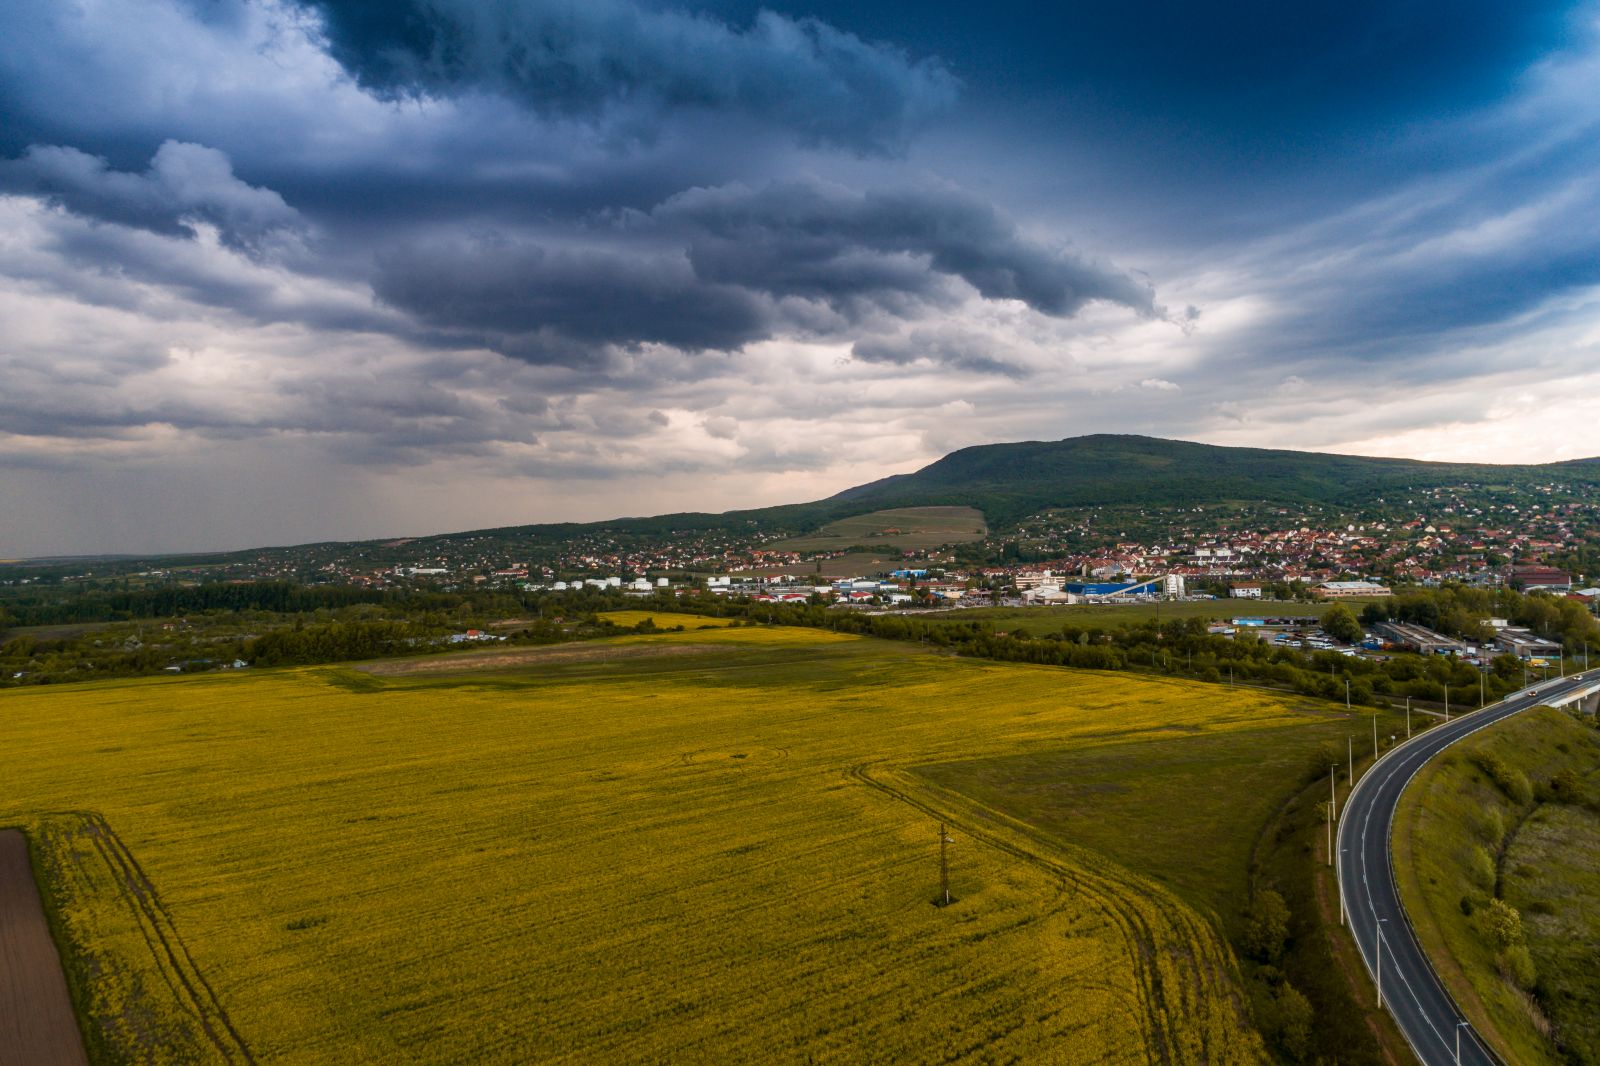 kánikula Magyarország időjárás előrejelzés Budapest Dunántúl Balaton jégeső eső zápor nyár 2022 június hőség hőfok kirándulás program esemény figyelmeztetés veszélyjelzés